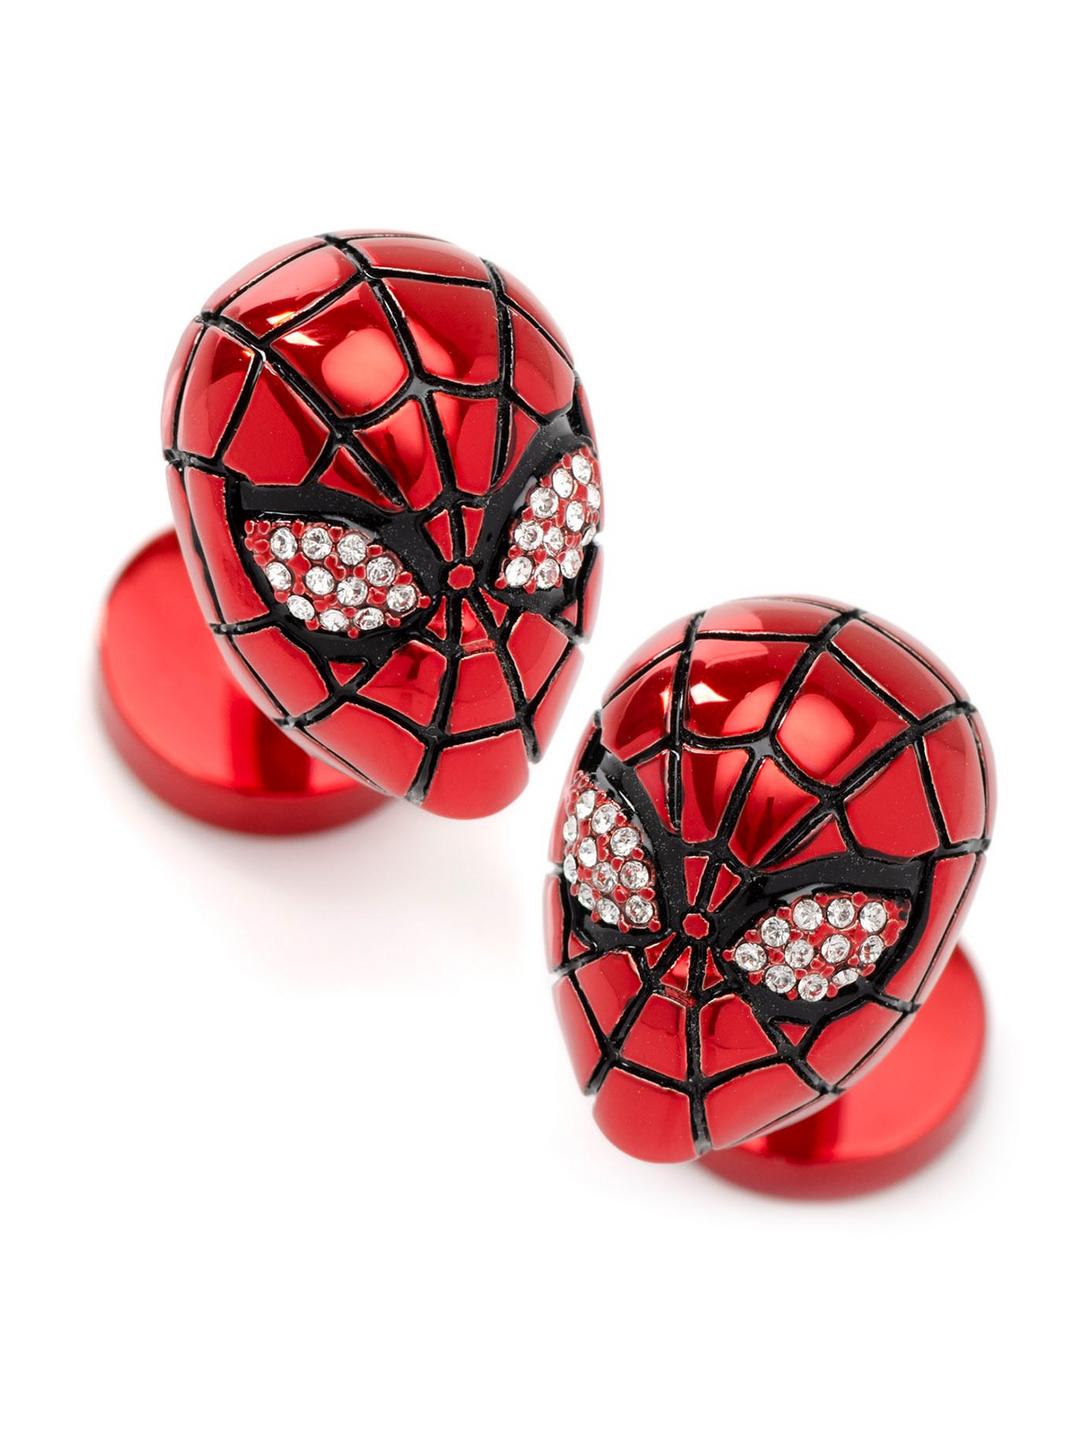 Marvel Spider-Man 3D Crystal Cufflinks, , hi-res